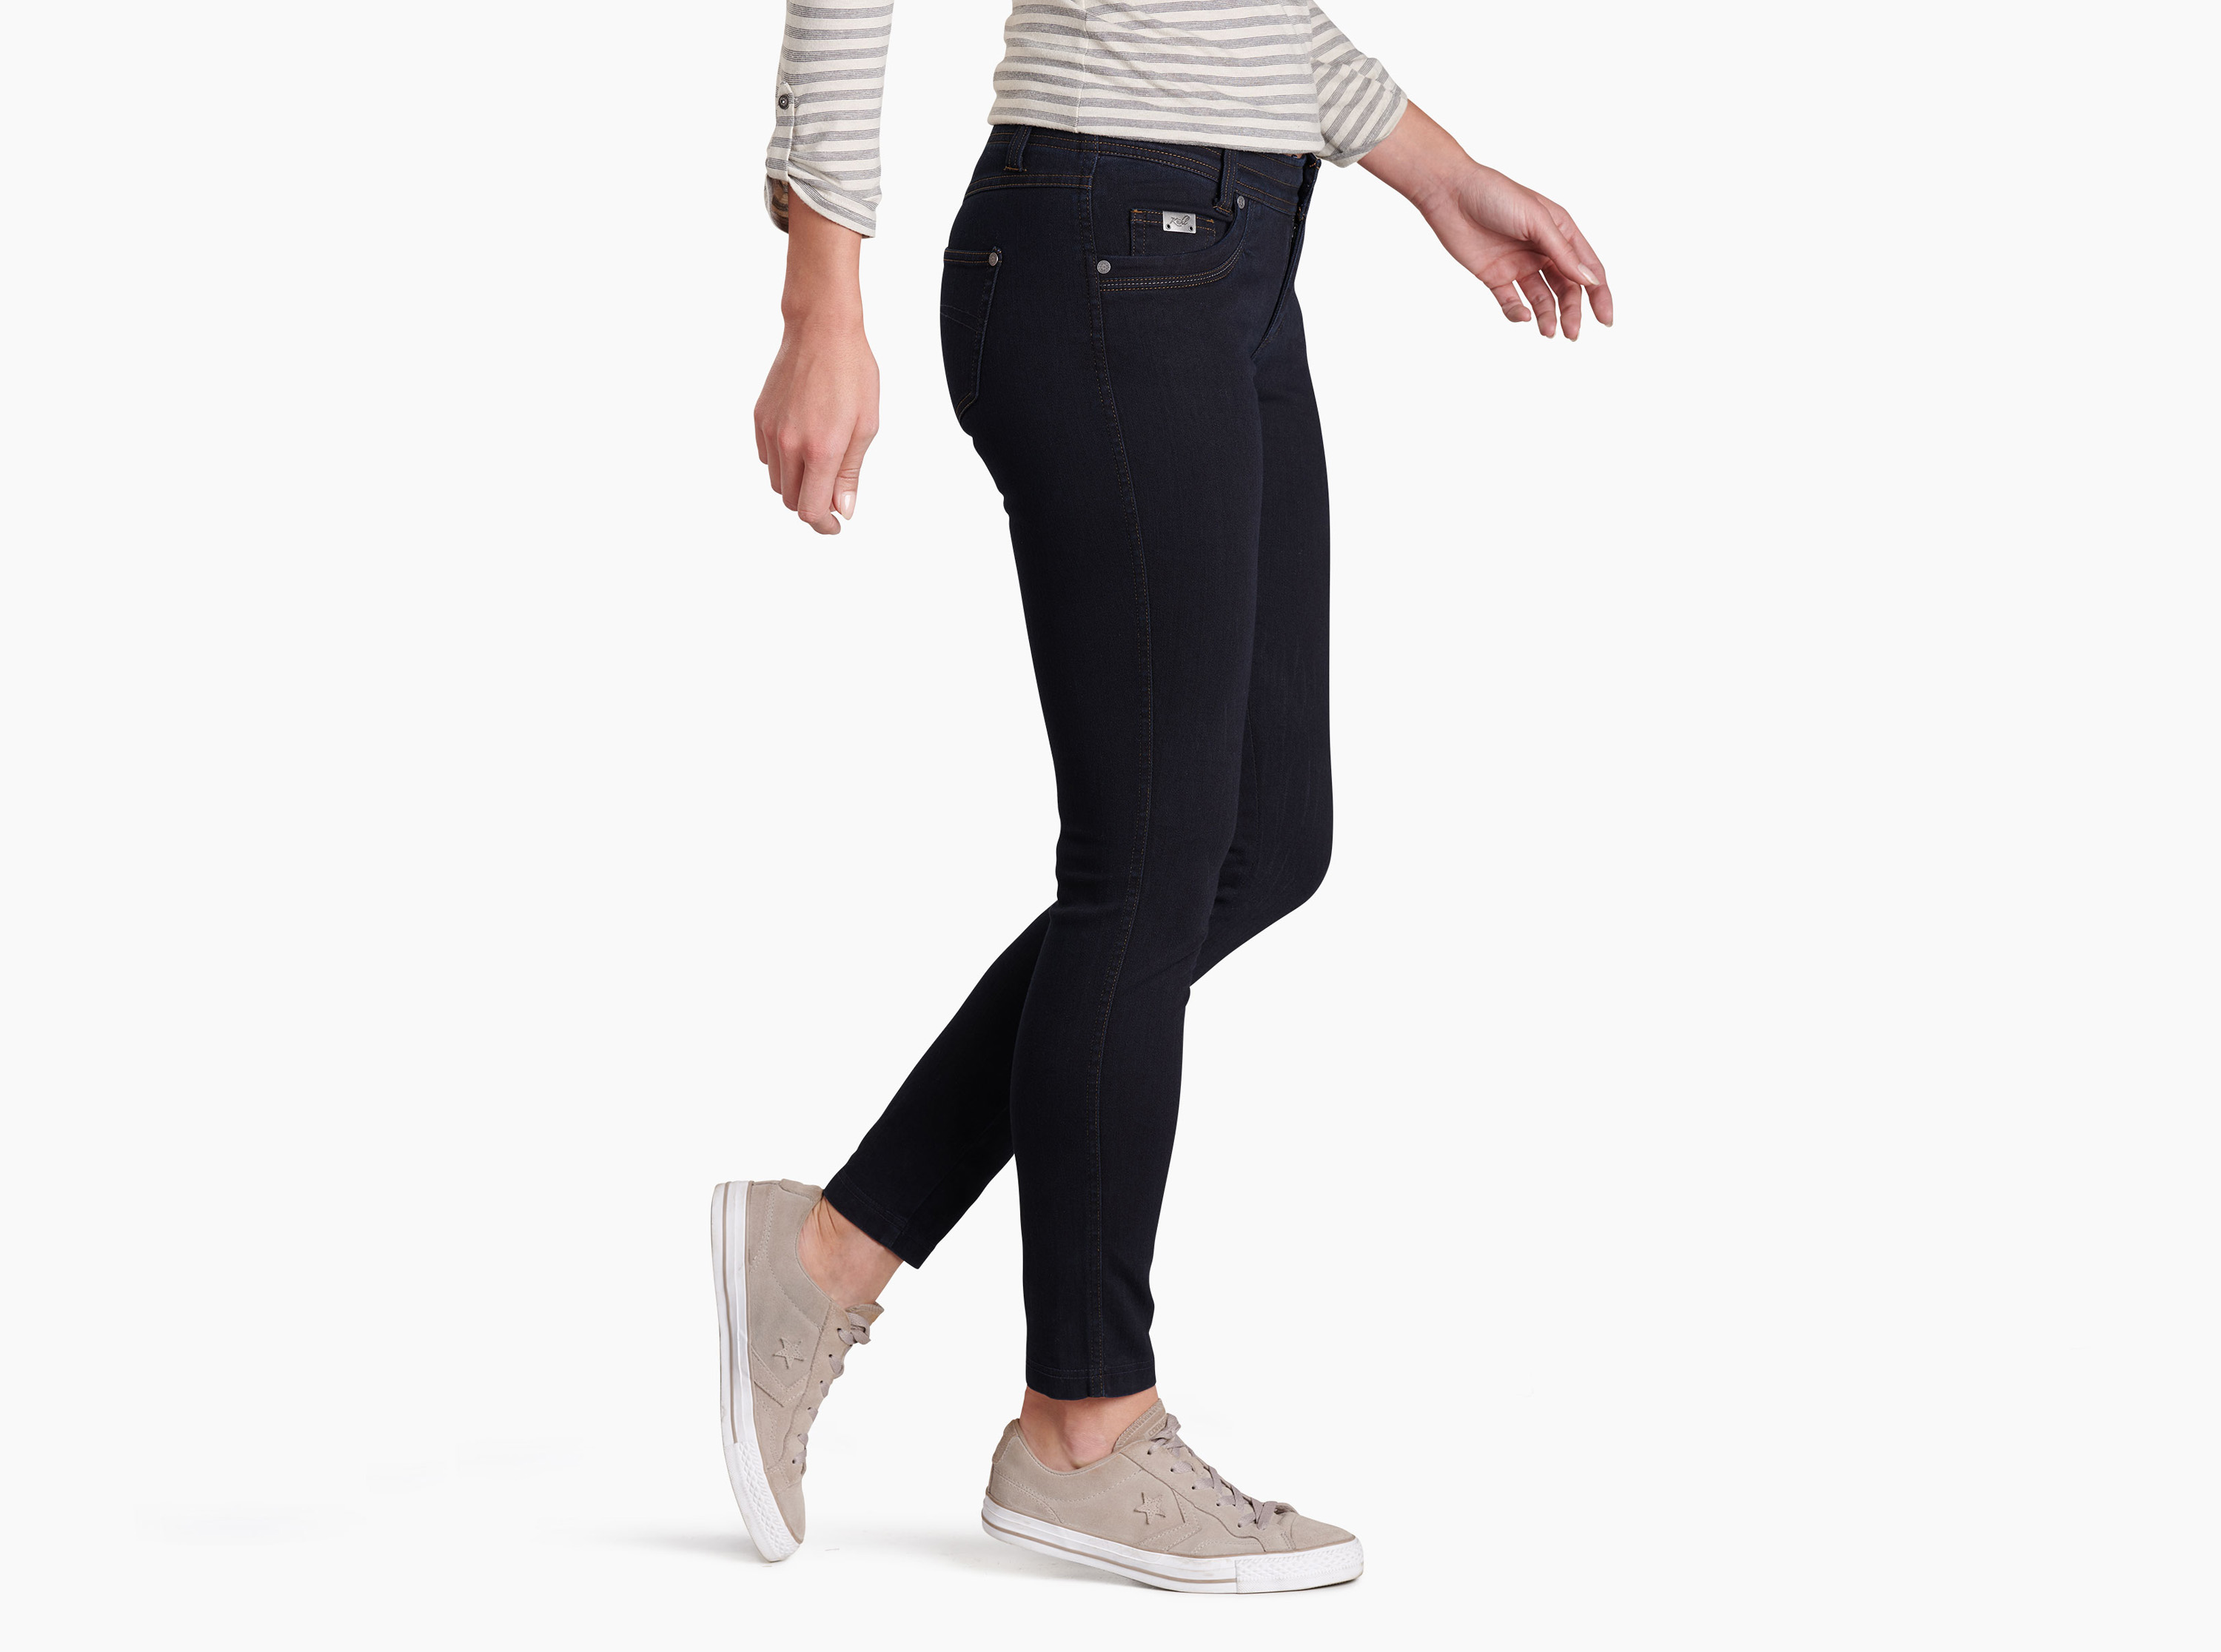 Danzr™ Skinny Jean in Women's Pants